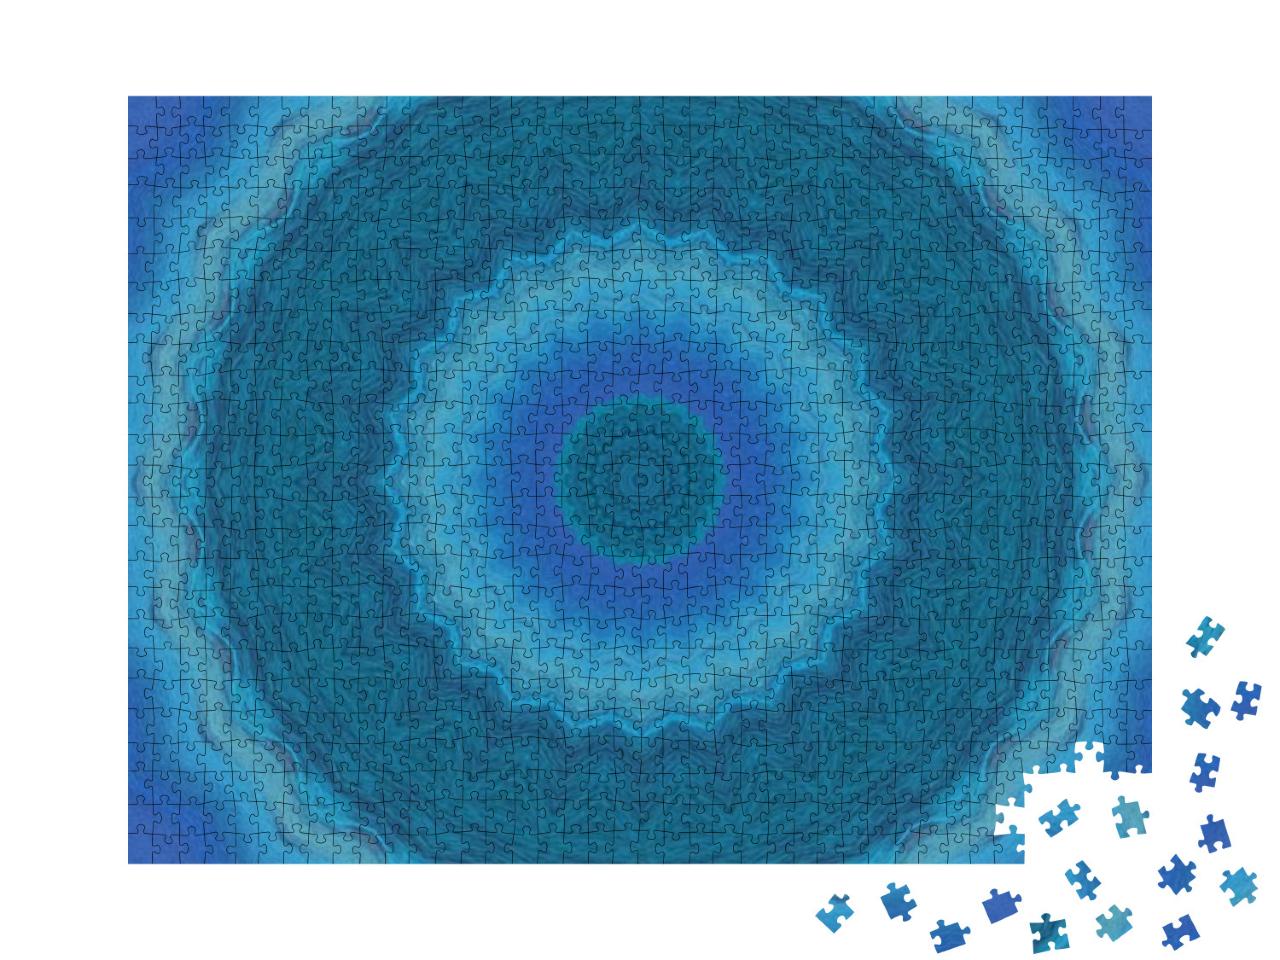 Puzzle 1000 Teile „Sphärisches blaues Mandala“